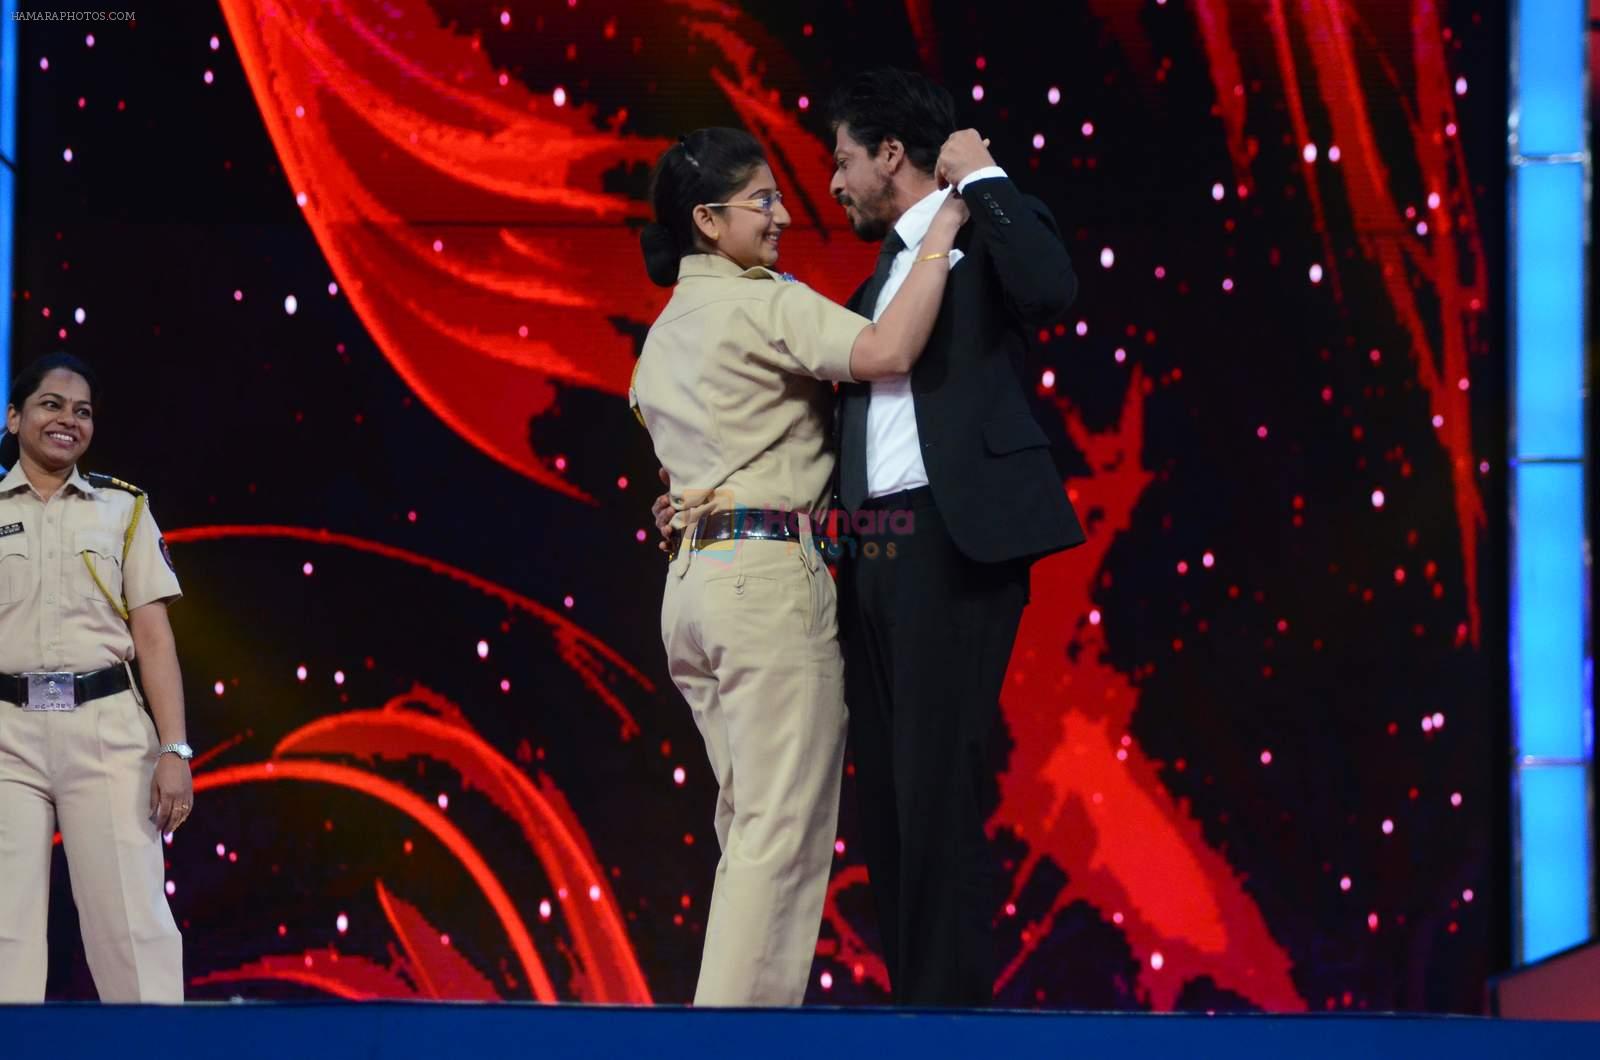 Shahrukh Khan at Umang police show on 19th Jan 2016